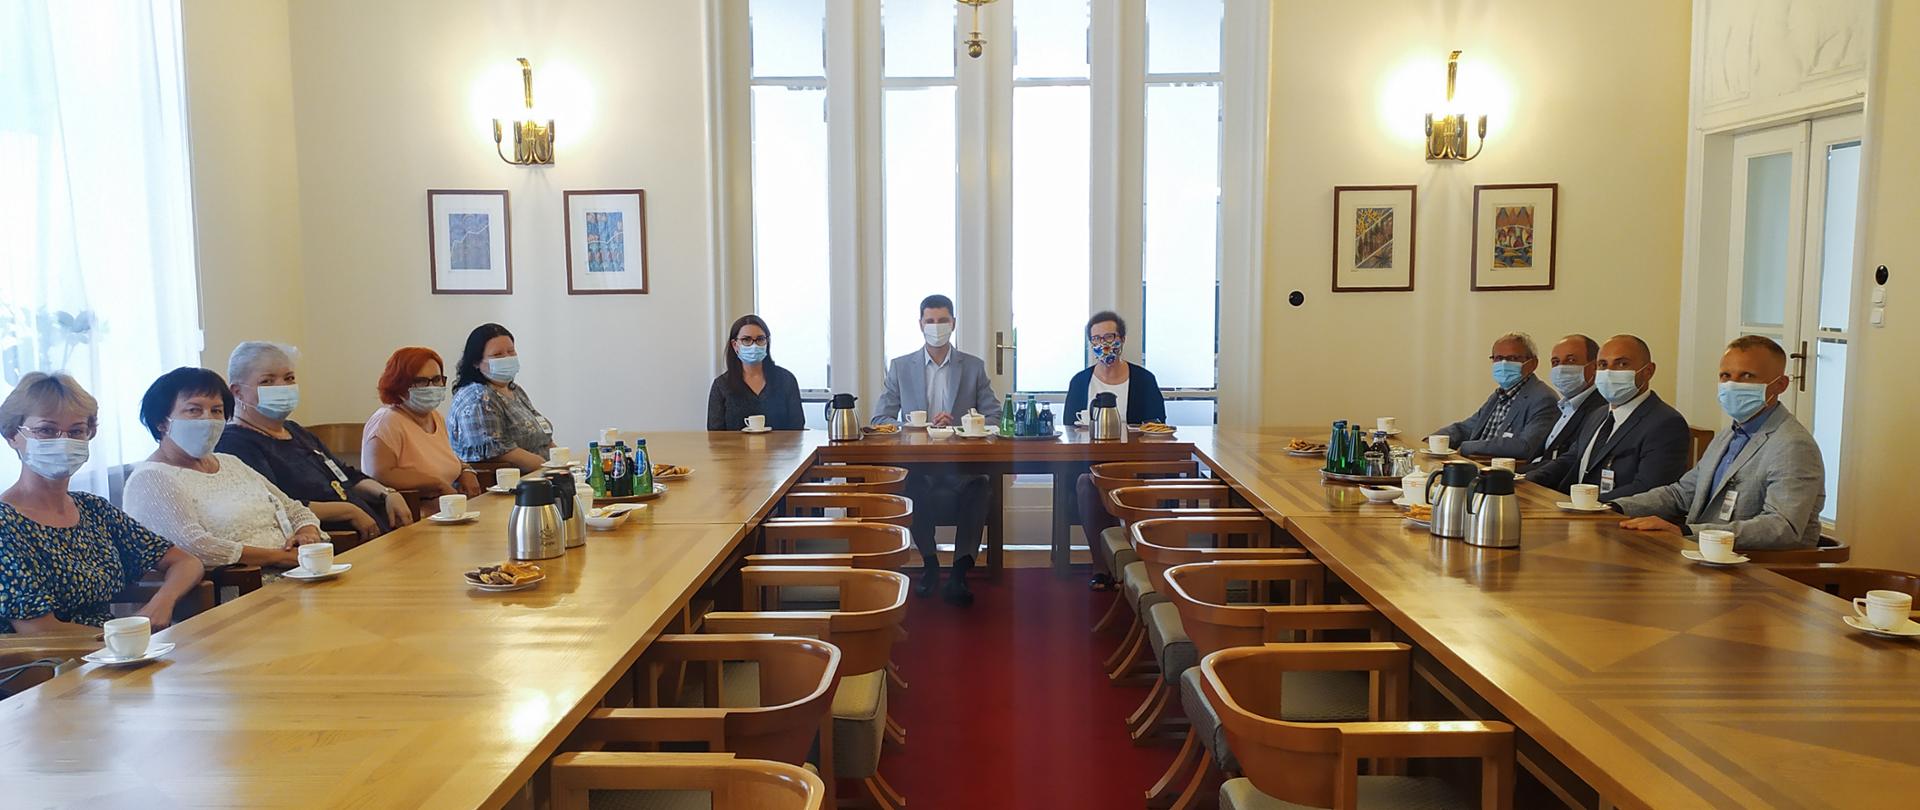 Uczestnicy spotkania siedzą przy stole w kształcie podkowy. W centrum siedzi wiceminister Dariusz Piontkowski.